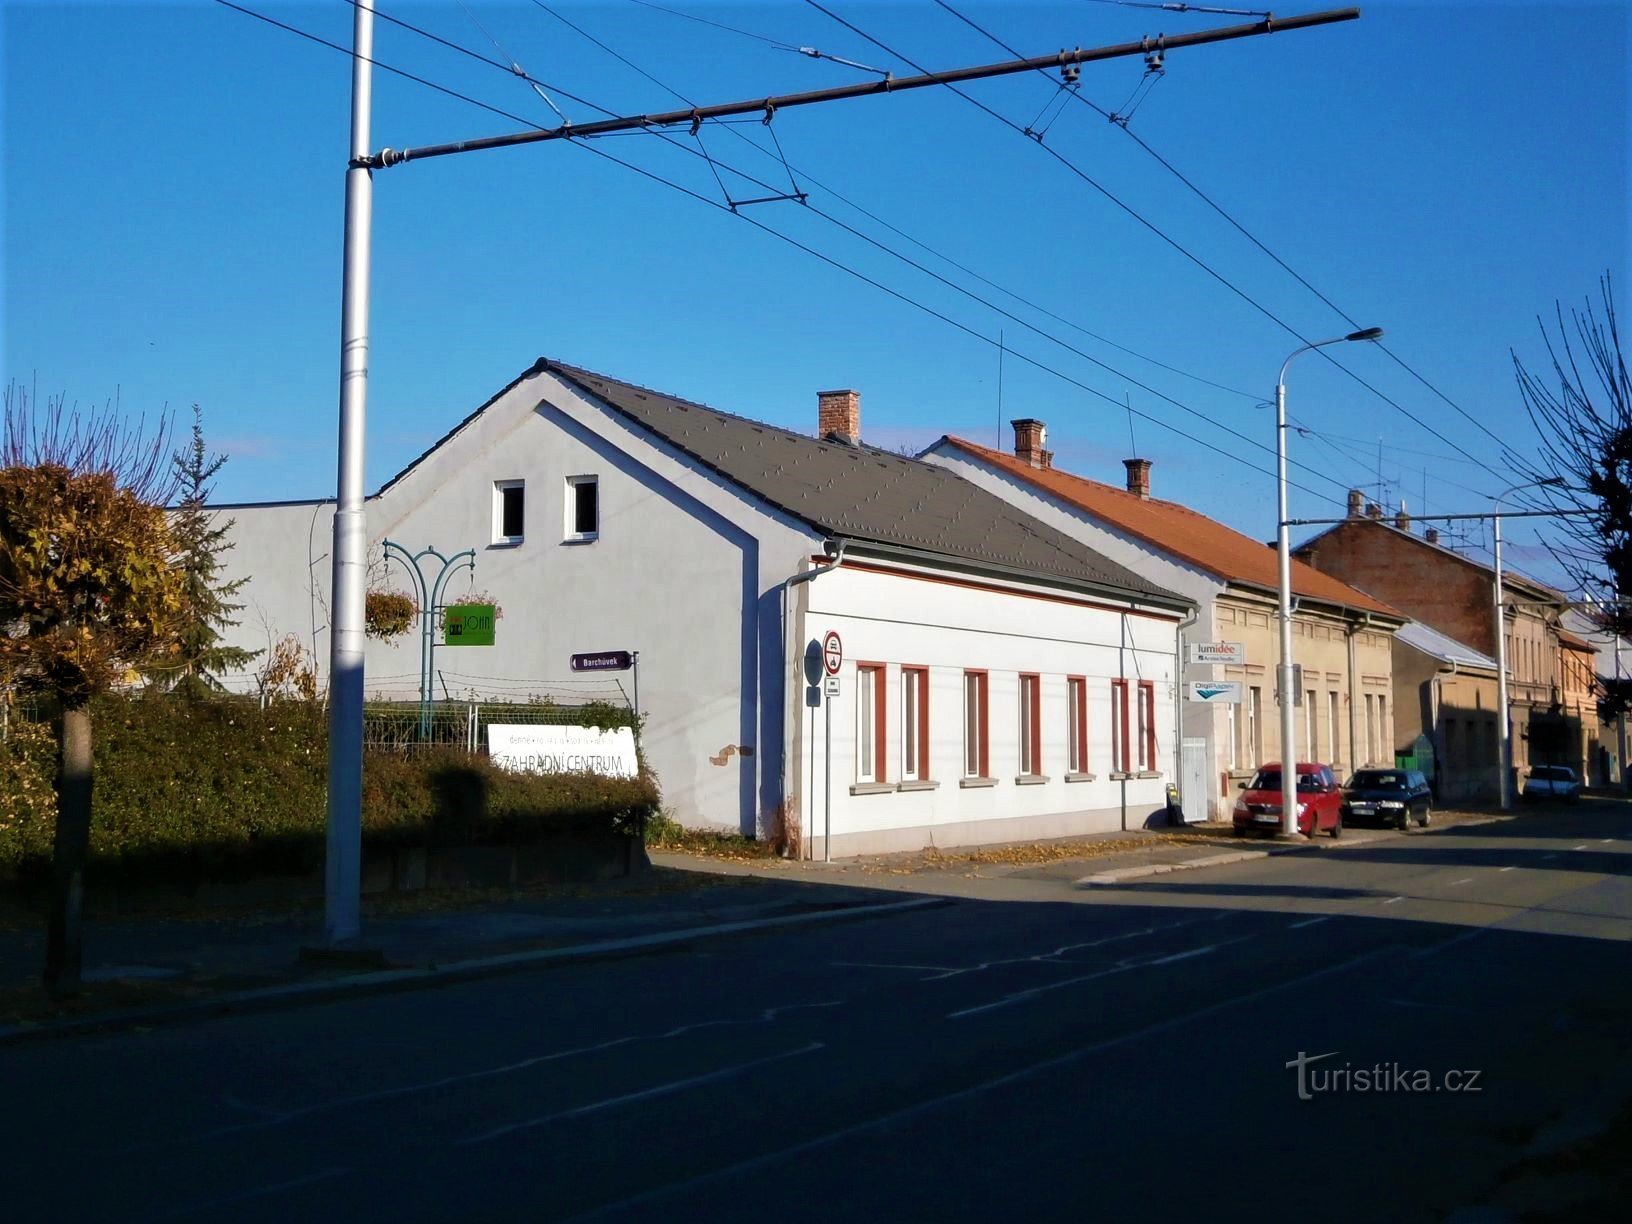 Sisäänkäynti Barchůvkiin ja taloon nro 142 (Hradec Králové, 13.11.2016)